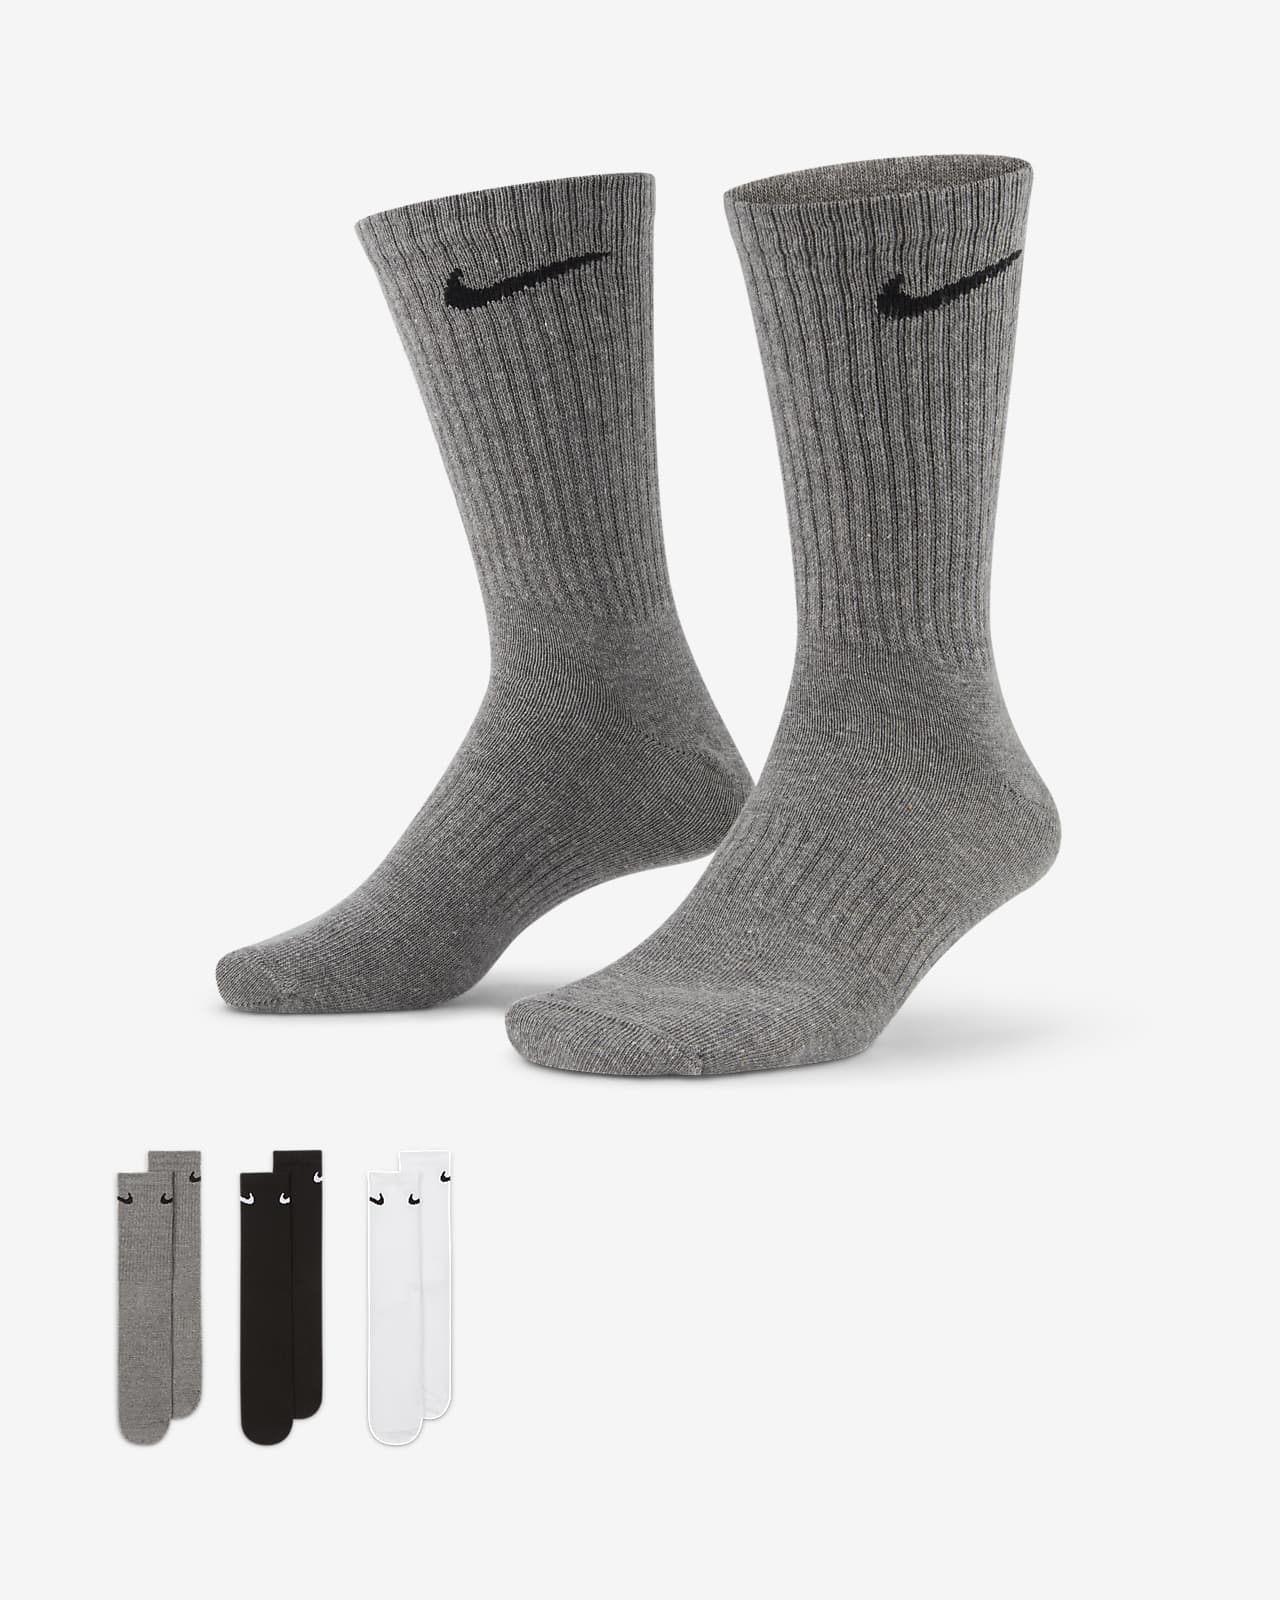 Κάλτσες προπόνησης μεσαίου ύψους Nike Everyday Lightweight (3 ζευγάρια)